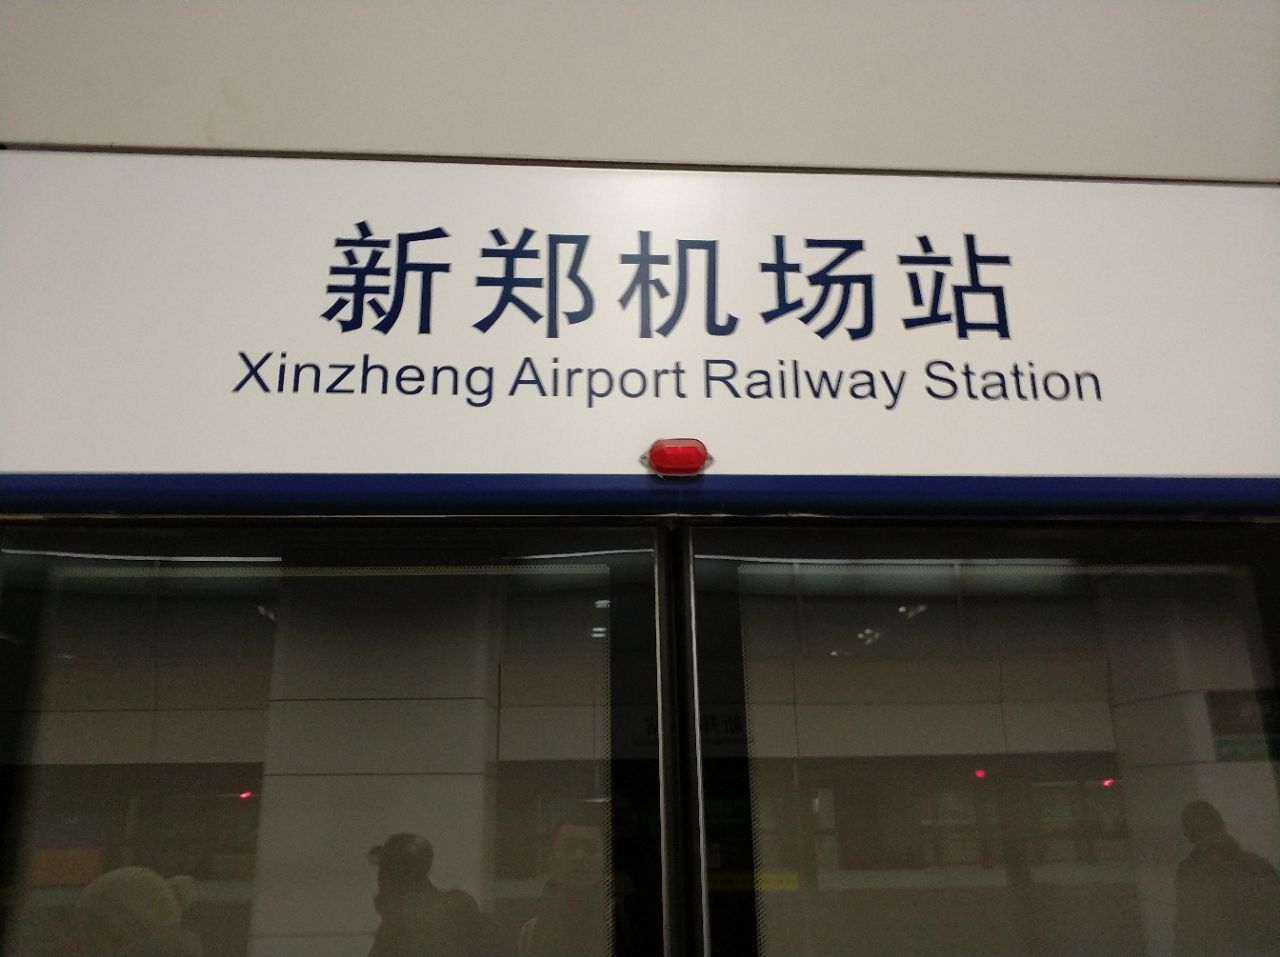 我们是坐城际高铁从郑州来的,交通非常方便,新郑机场设施非常先进